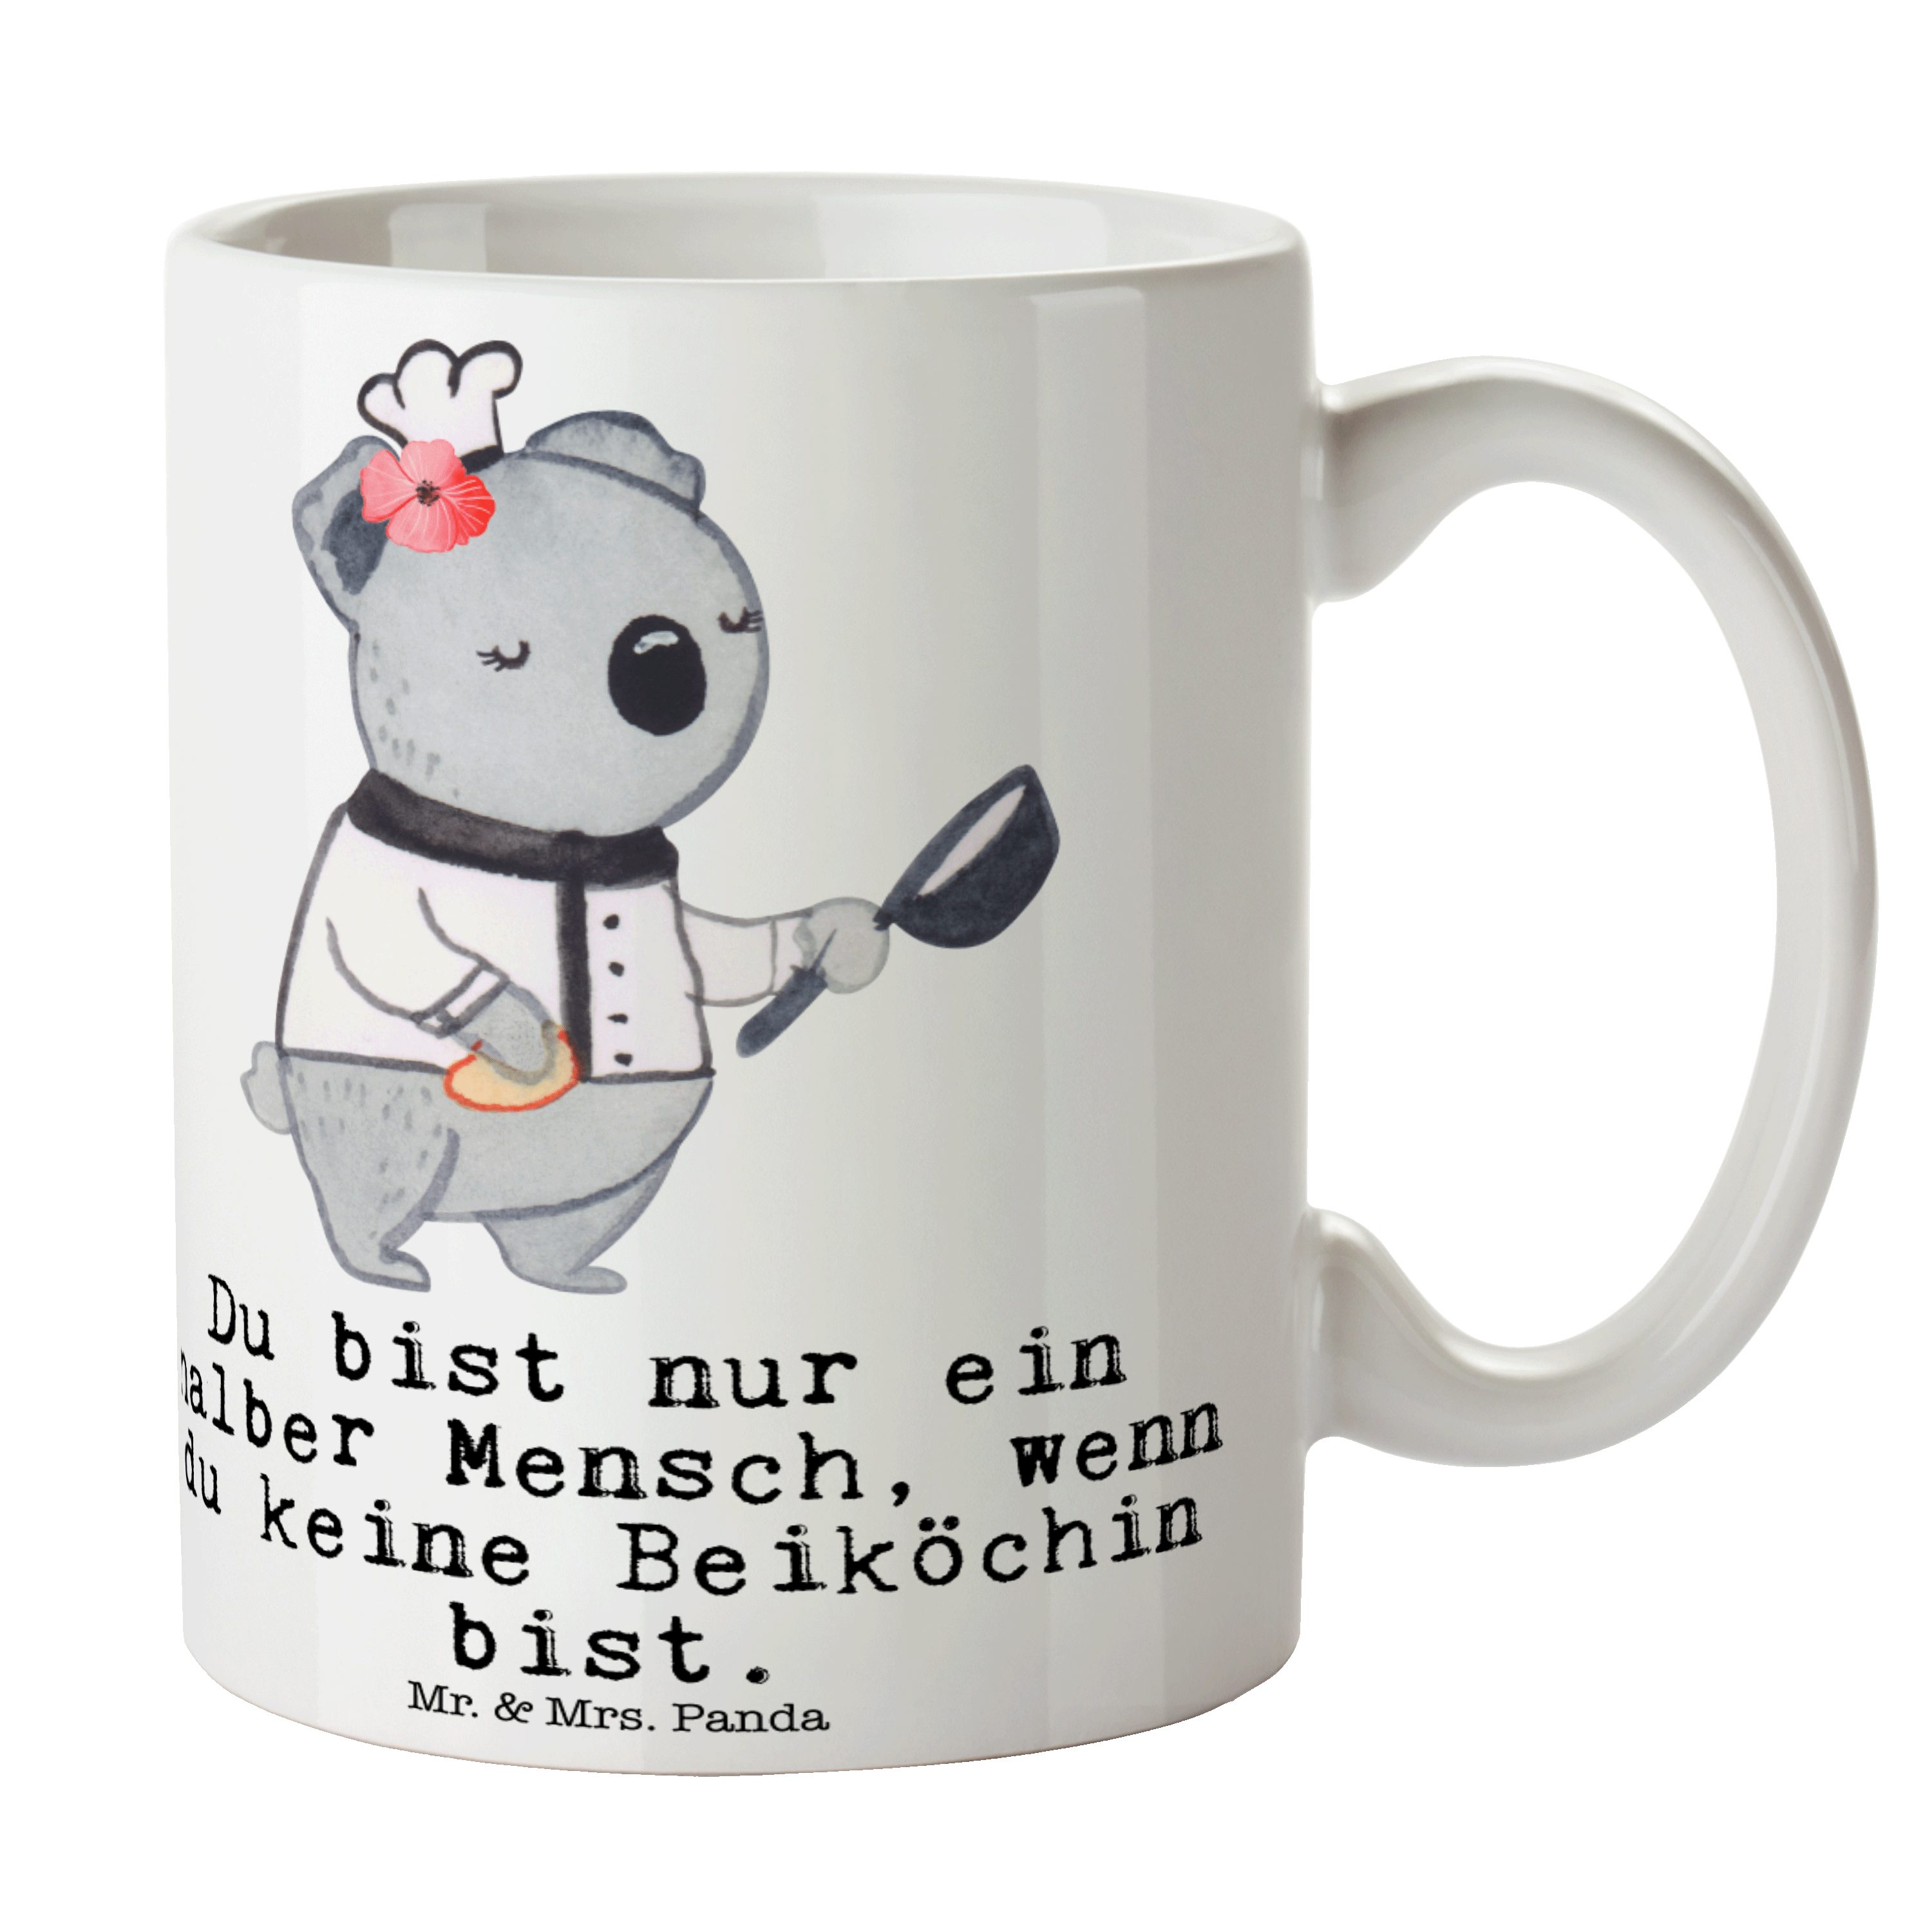 Mr. & Mrs. Panda Tasse Beiköchin mit Herz - Weiß - Geschenk, Hilfsköchin, Jungkoch, Porzella, Keramik | Tassen